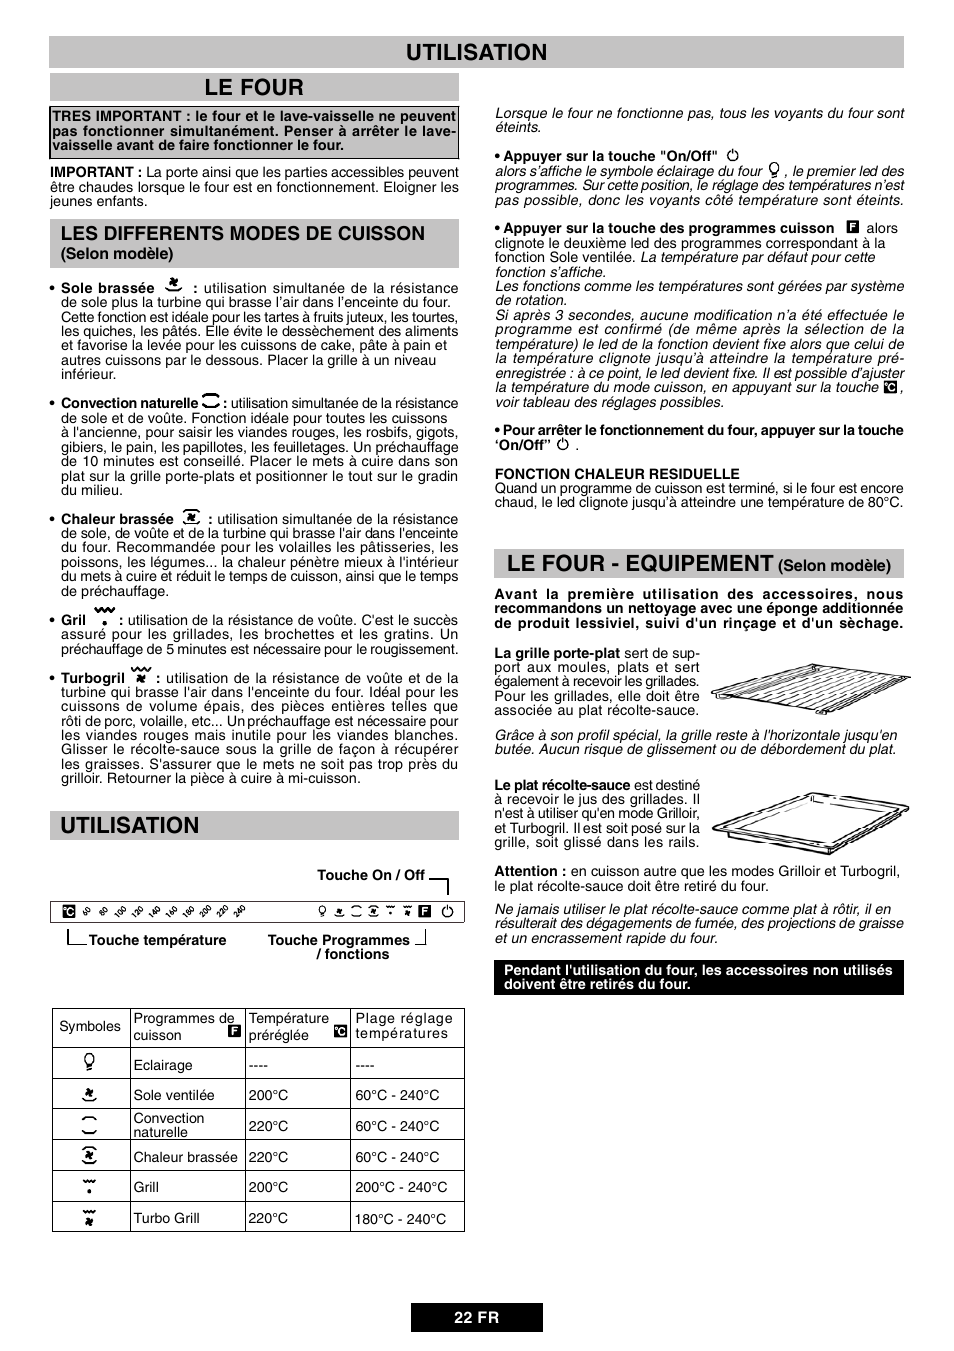 Le four, Utilisation le four - equipement, Utilisation | Candy DUO 609 X  User Manual | Page 24 / 76